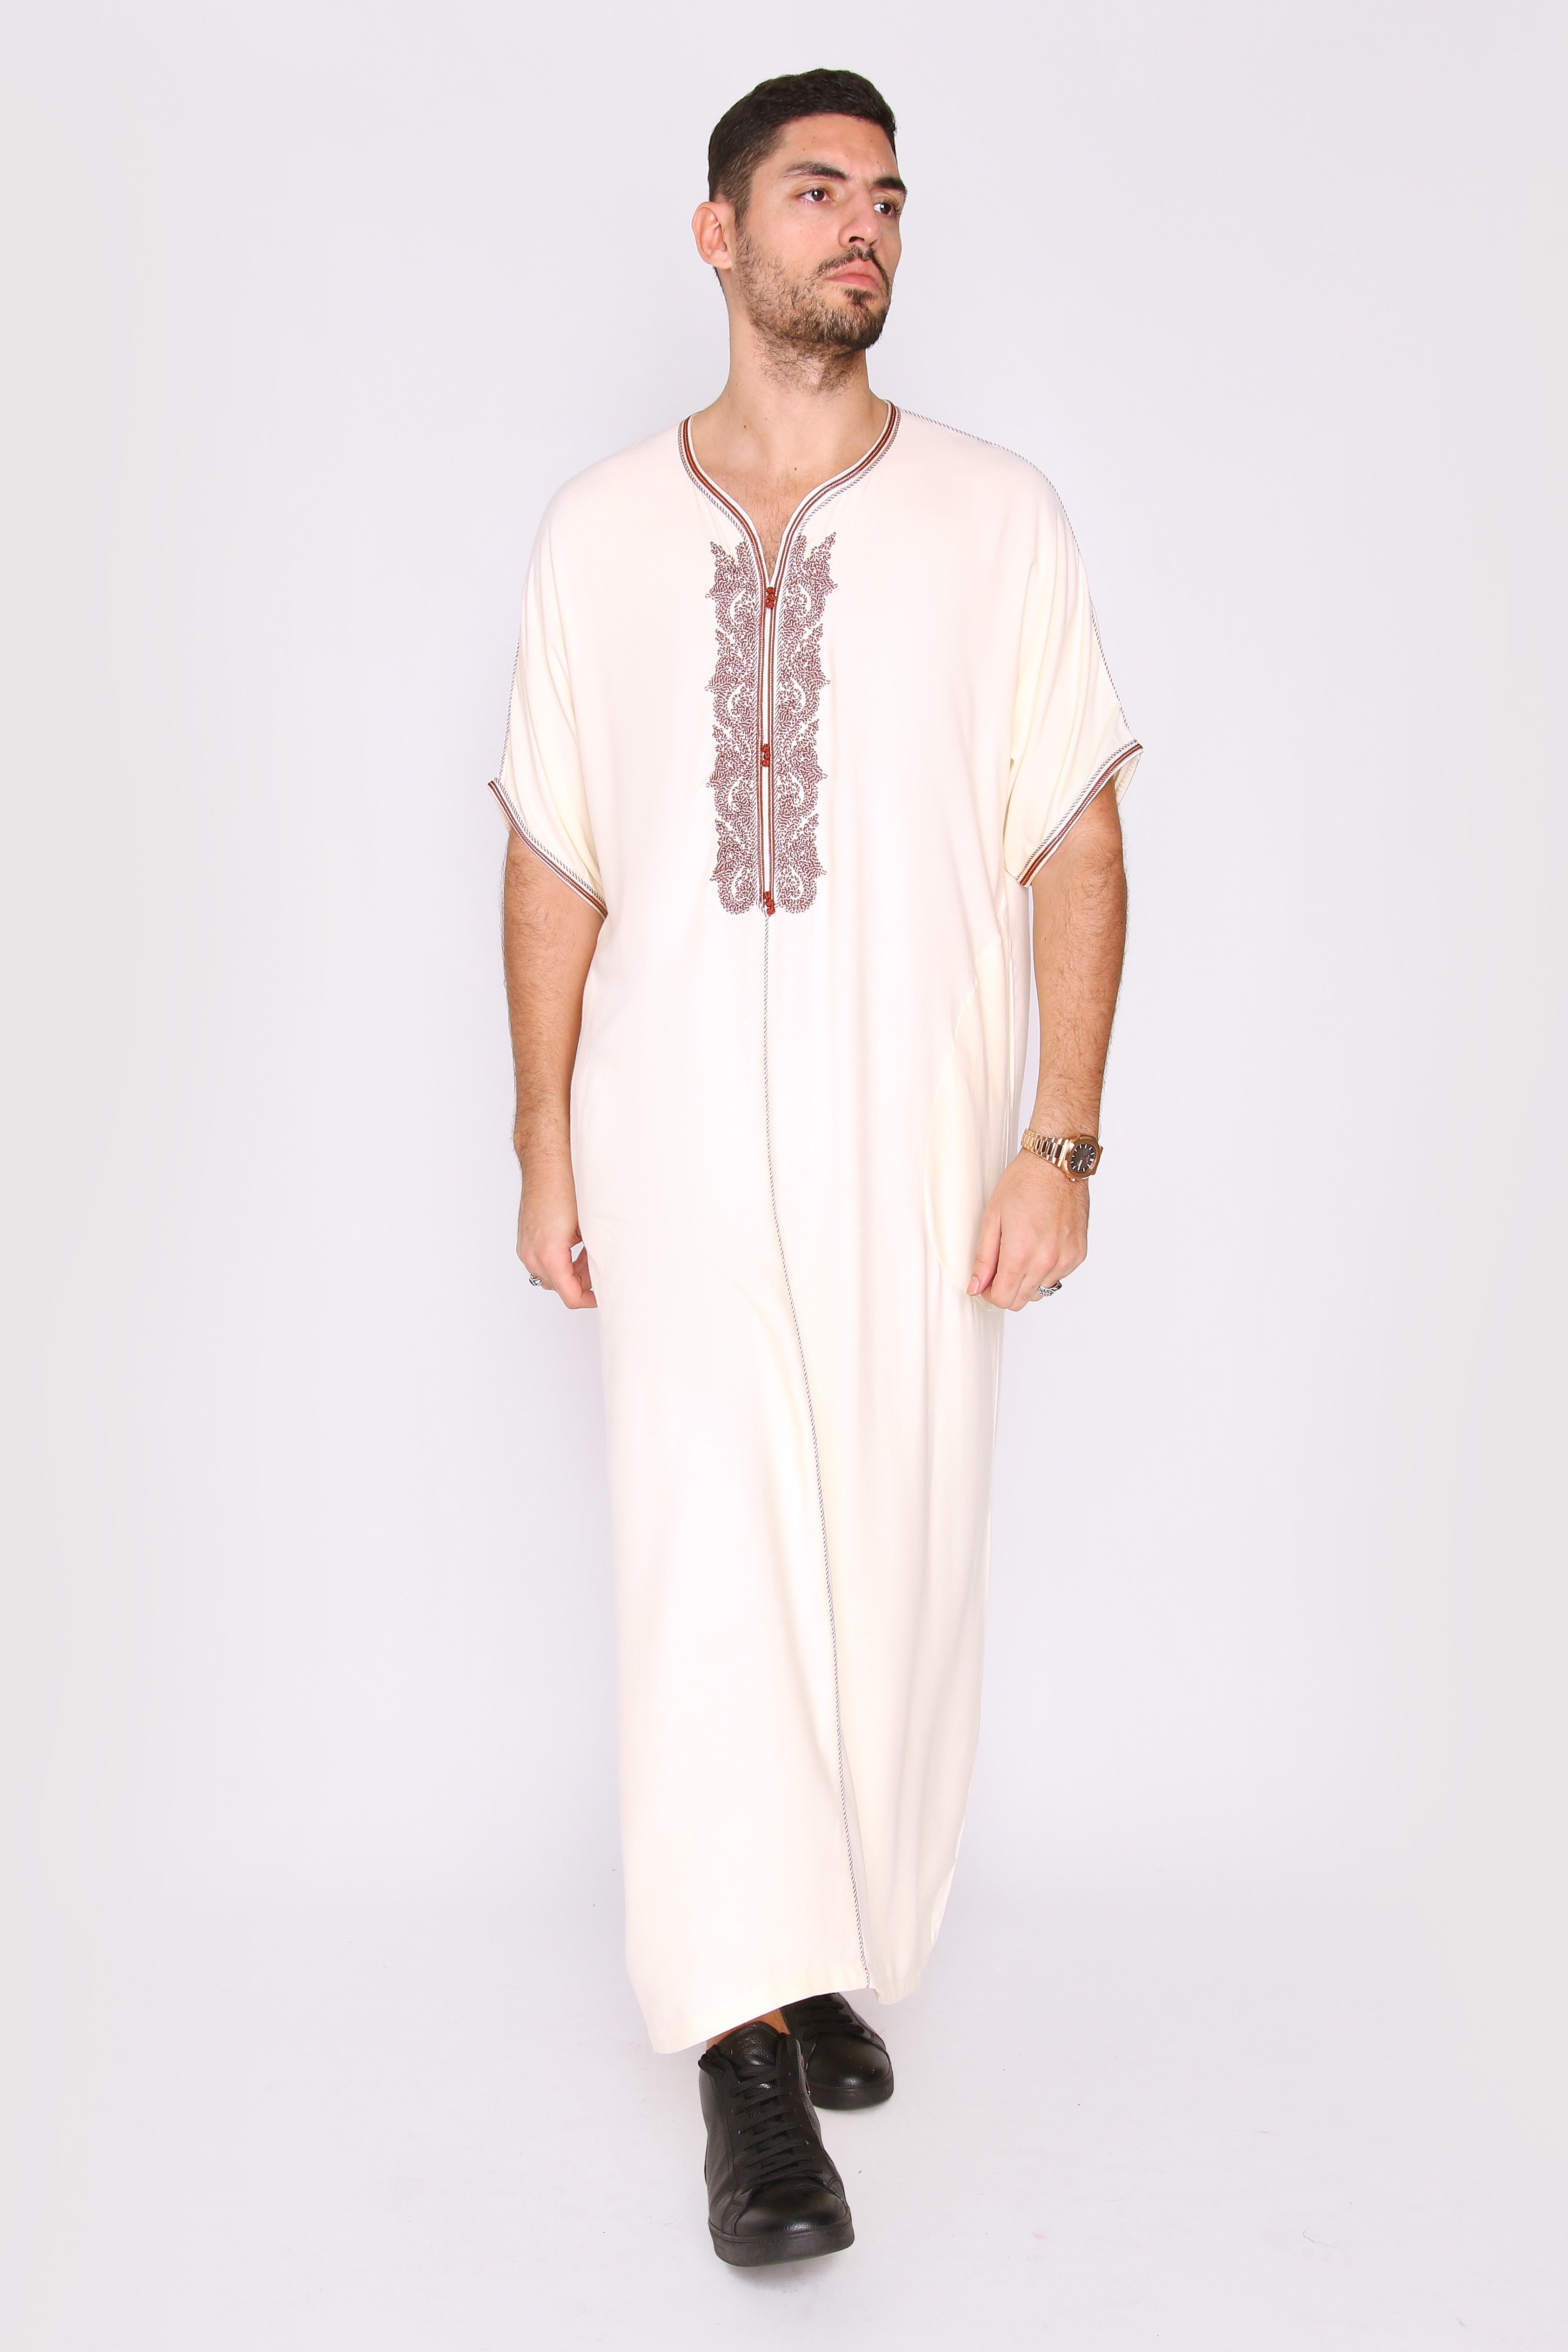 Gandoura Anwar Men's Long Robe Short Sleeve Casual Thobe in White